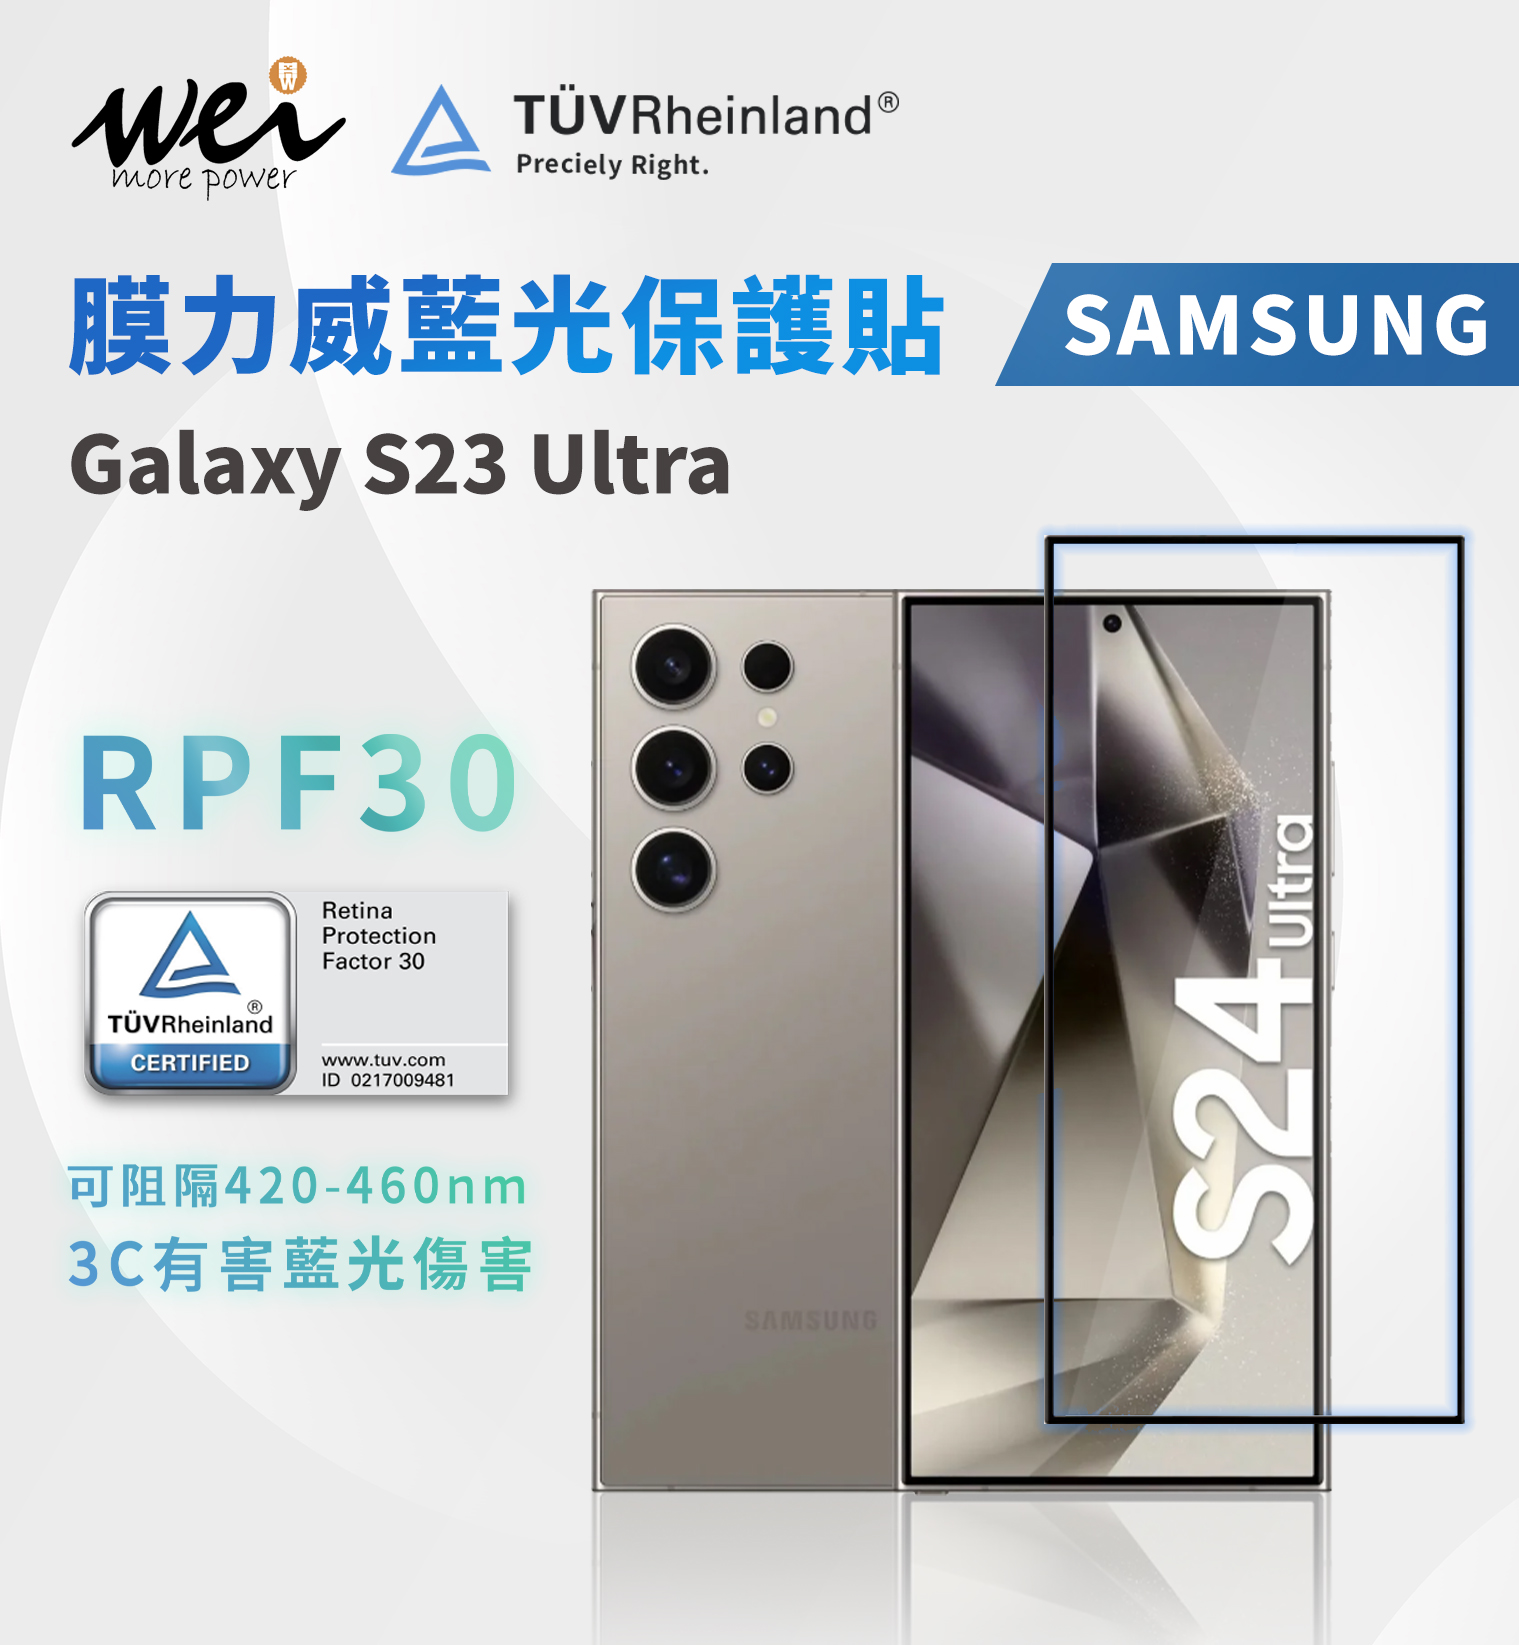 膜力威 SAMSUNG Galaxy S24 Ultra 德國萊茵TÜVRPF30  2.5D專利抗藍光保護貼